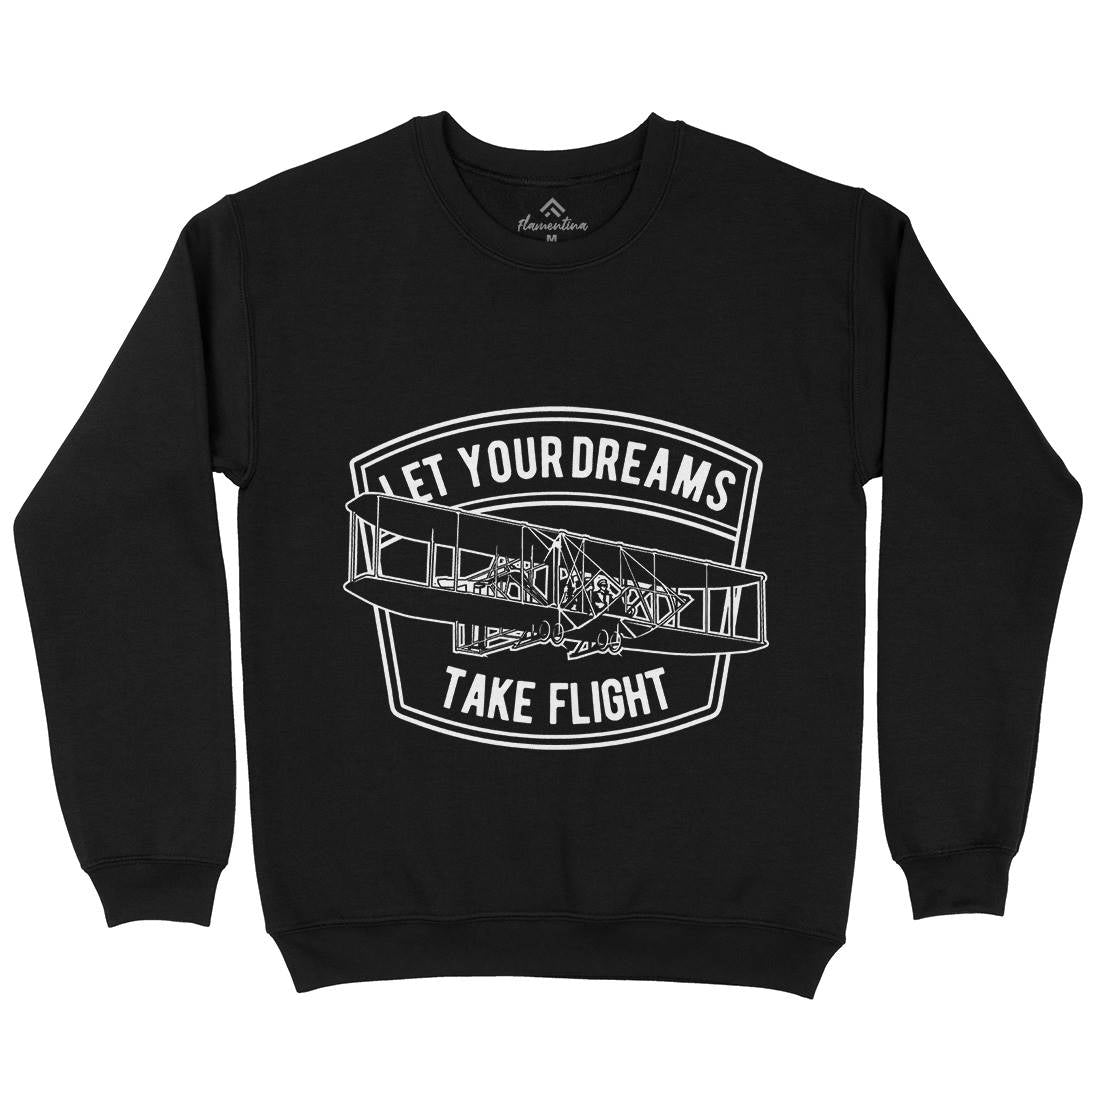 Let Your Dreams Kids Crew Neck Sweatshirt Vehicles A706